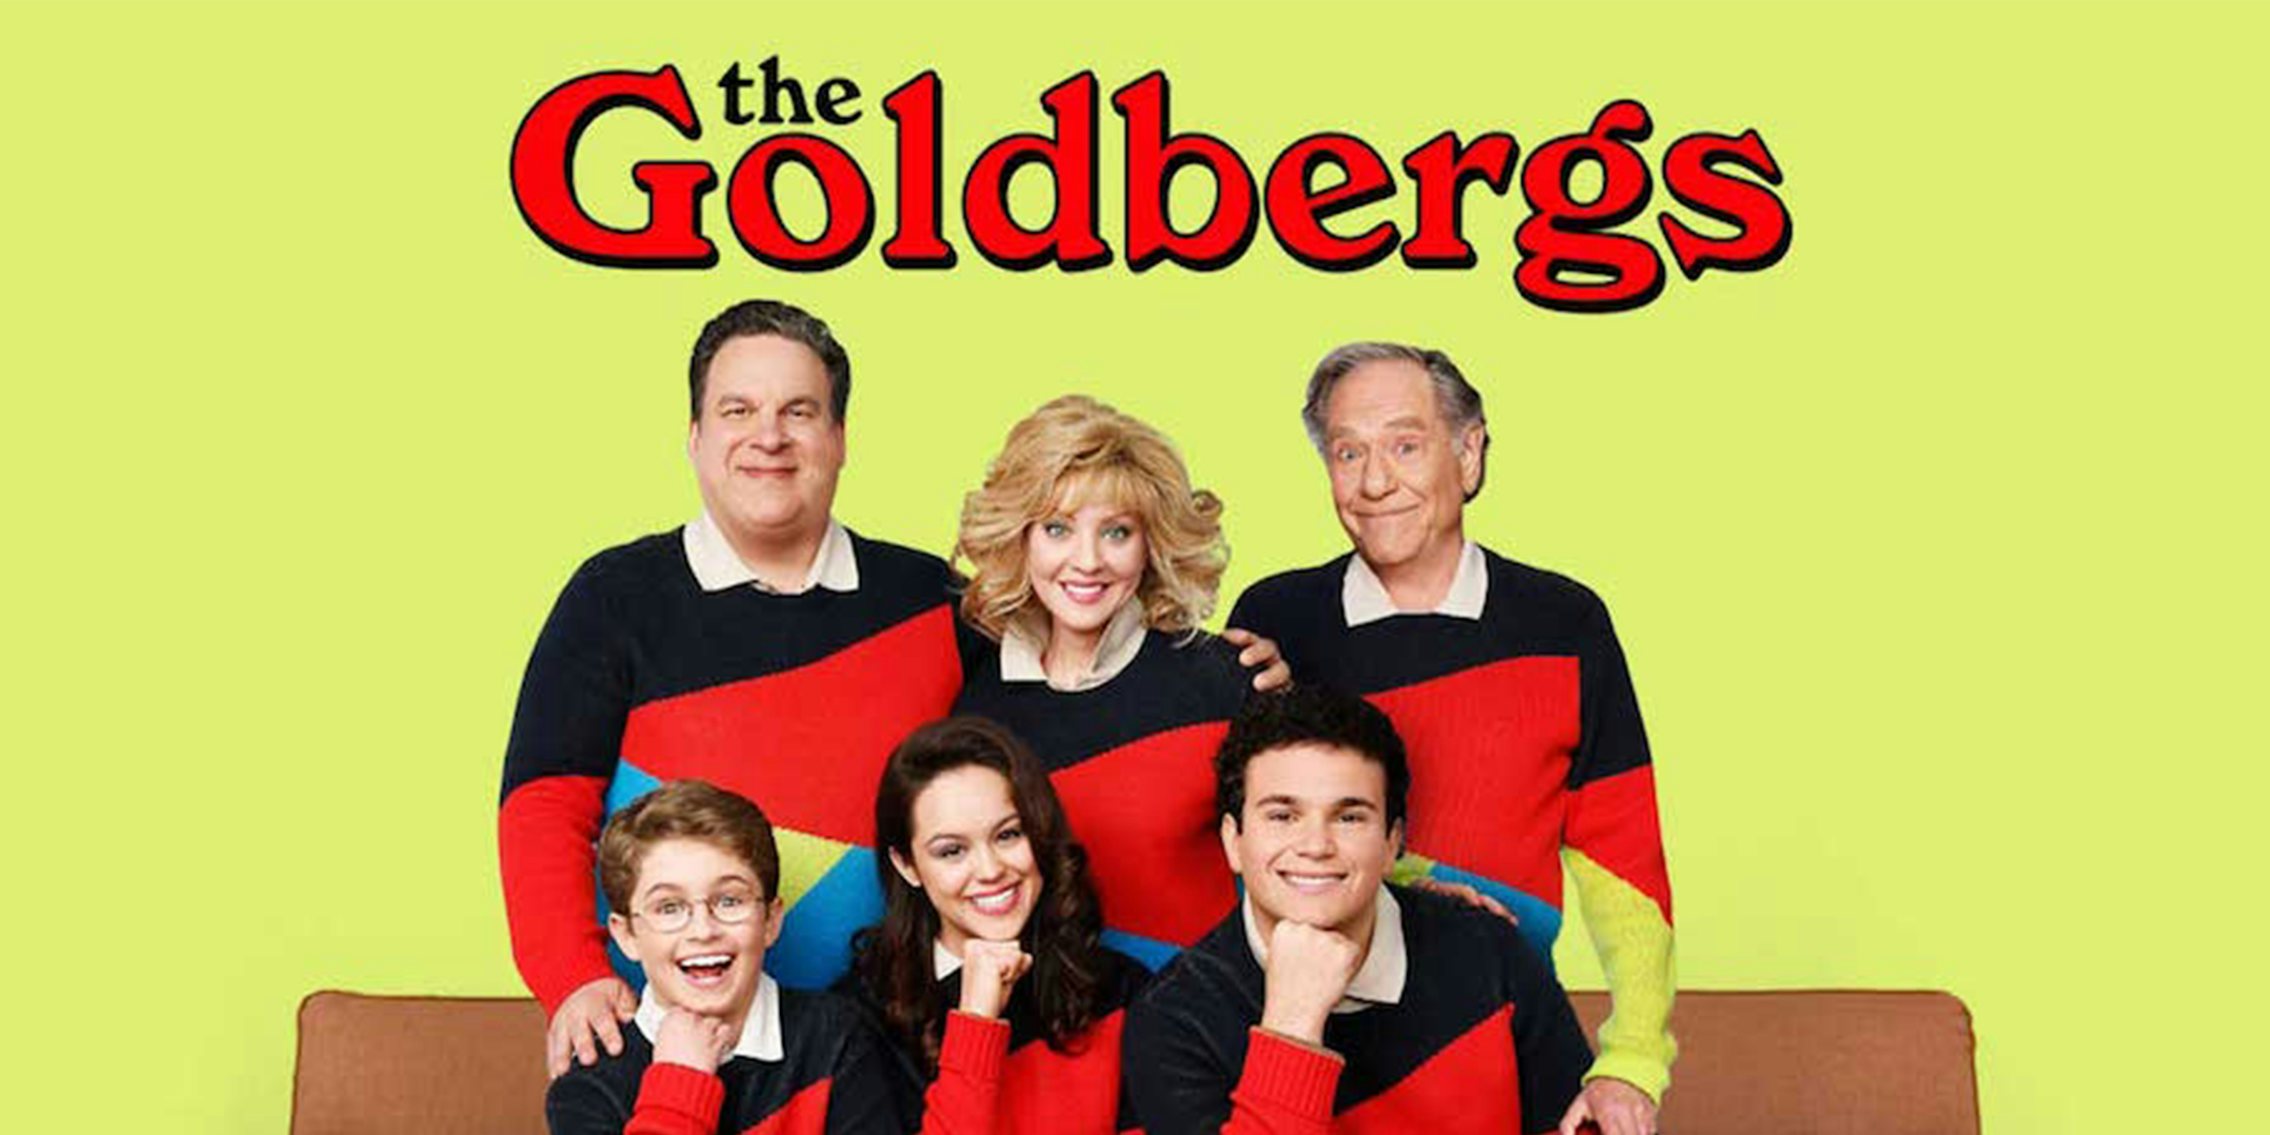 the Goldbergs